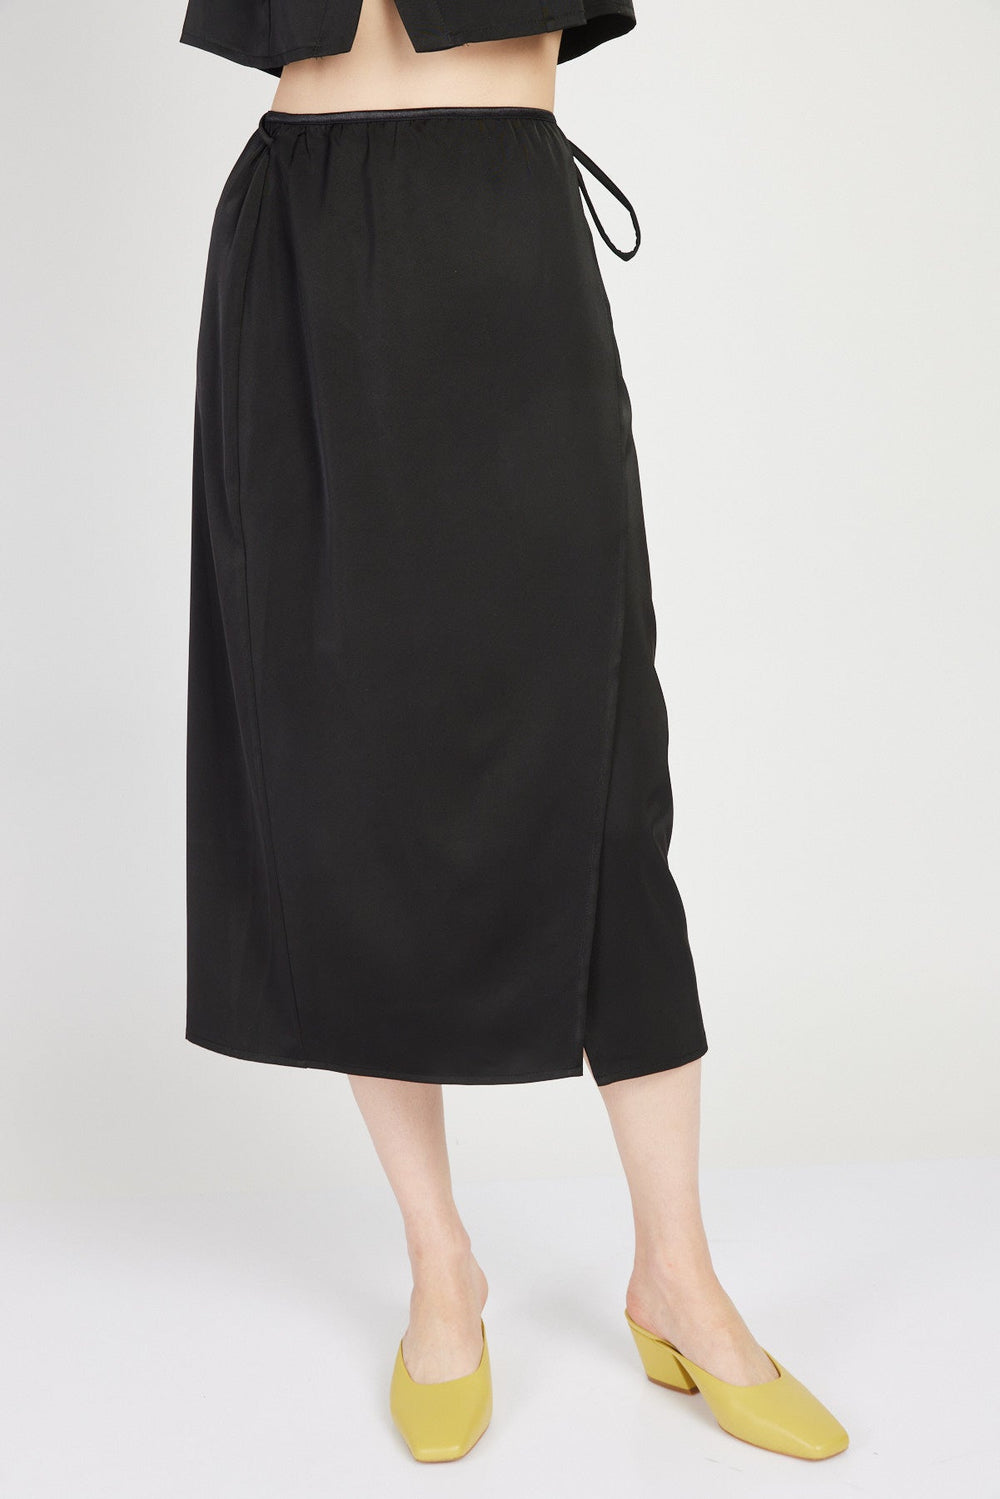 חצאית קשירה מידי אטלס בצבע שחור - Razili Studio